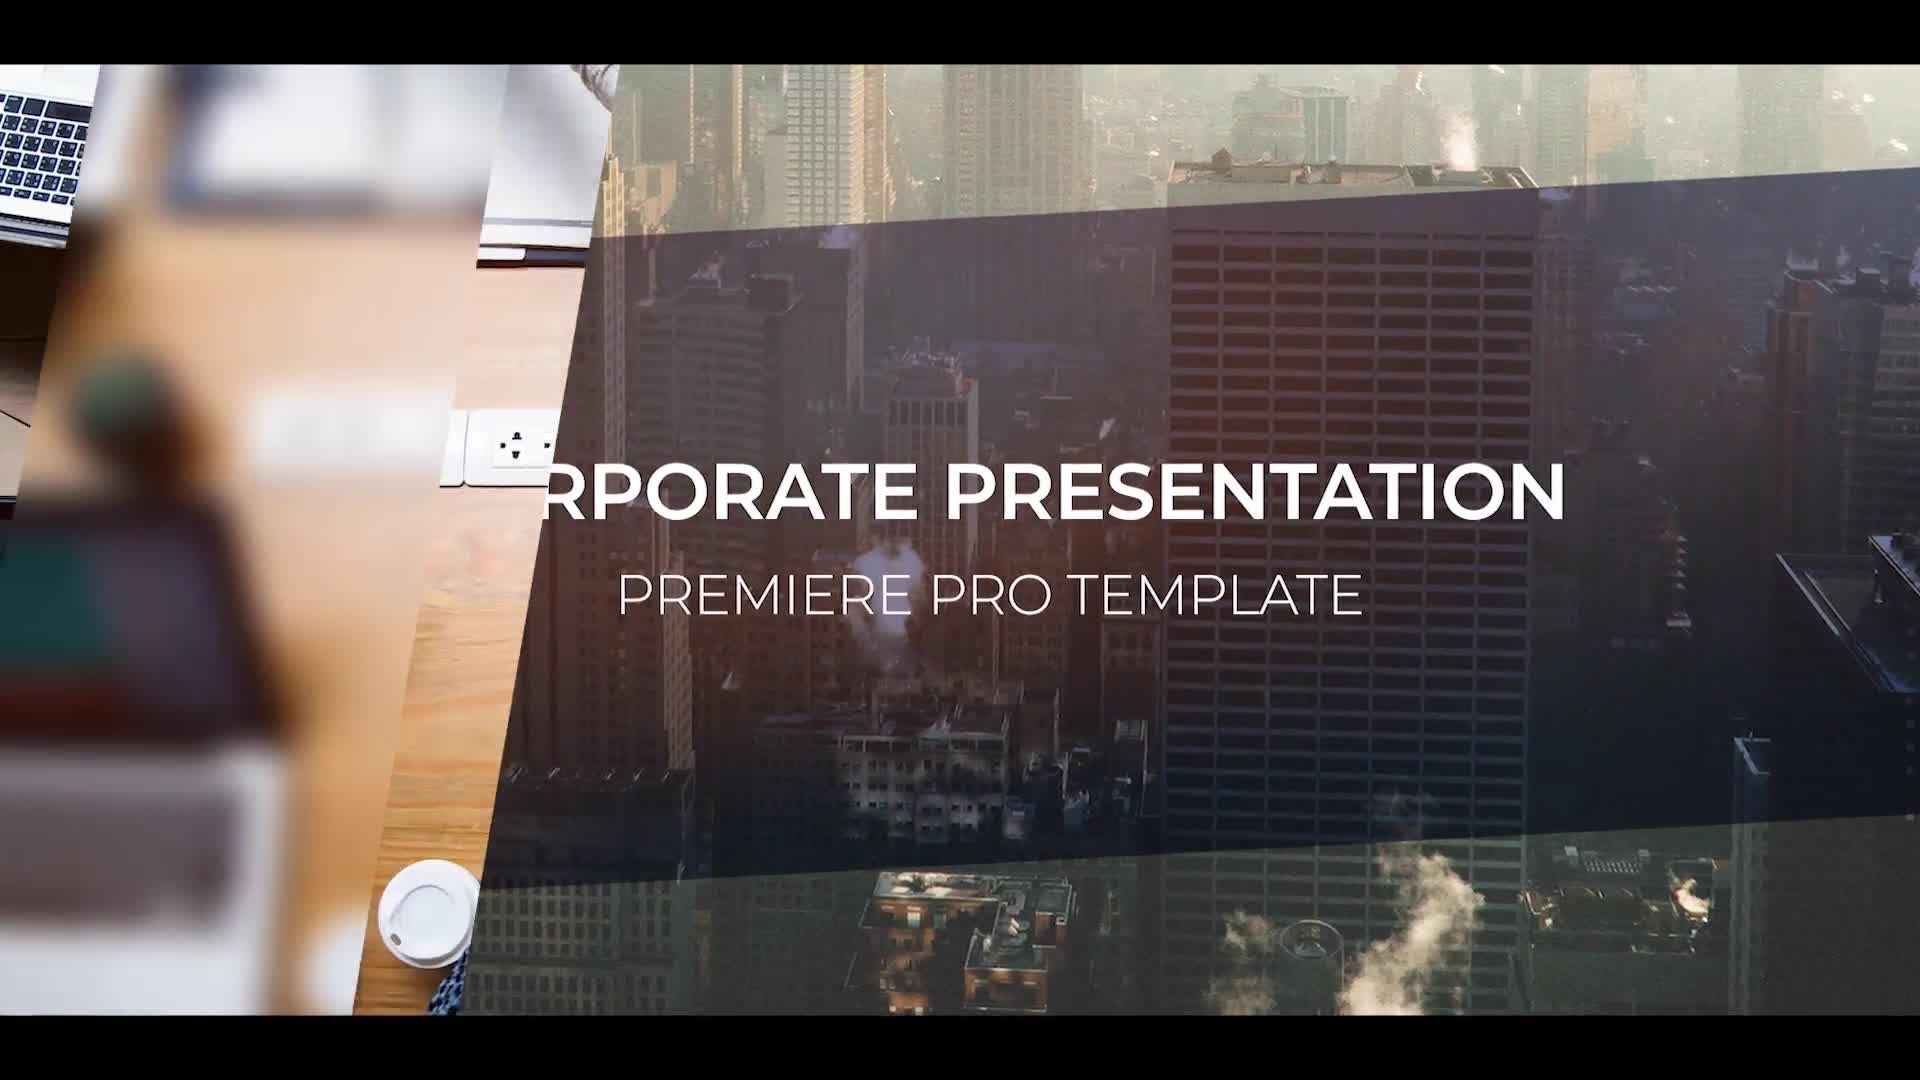 Corporate Presentation Videohive 25770903 Premiere Pro Image 1